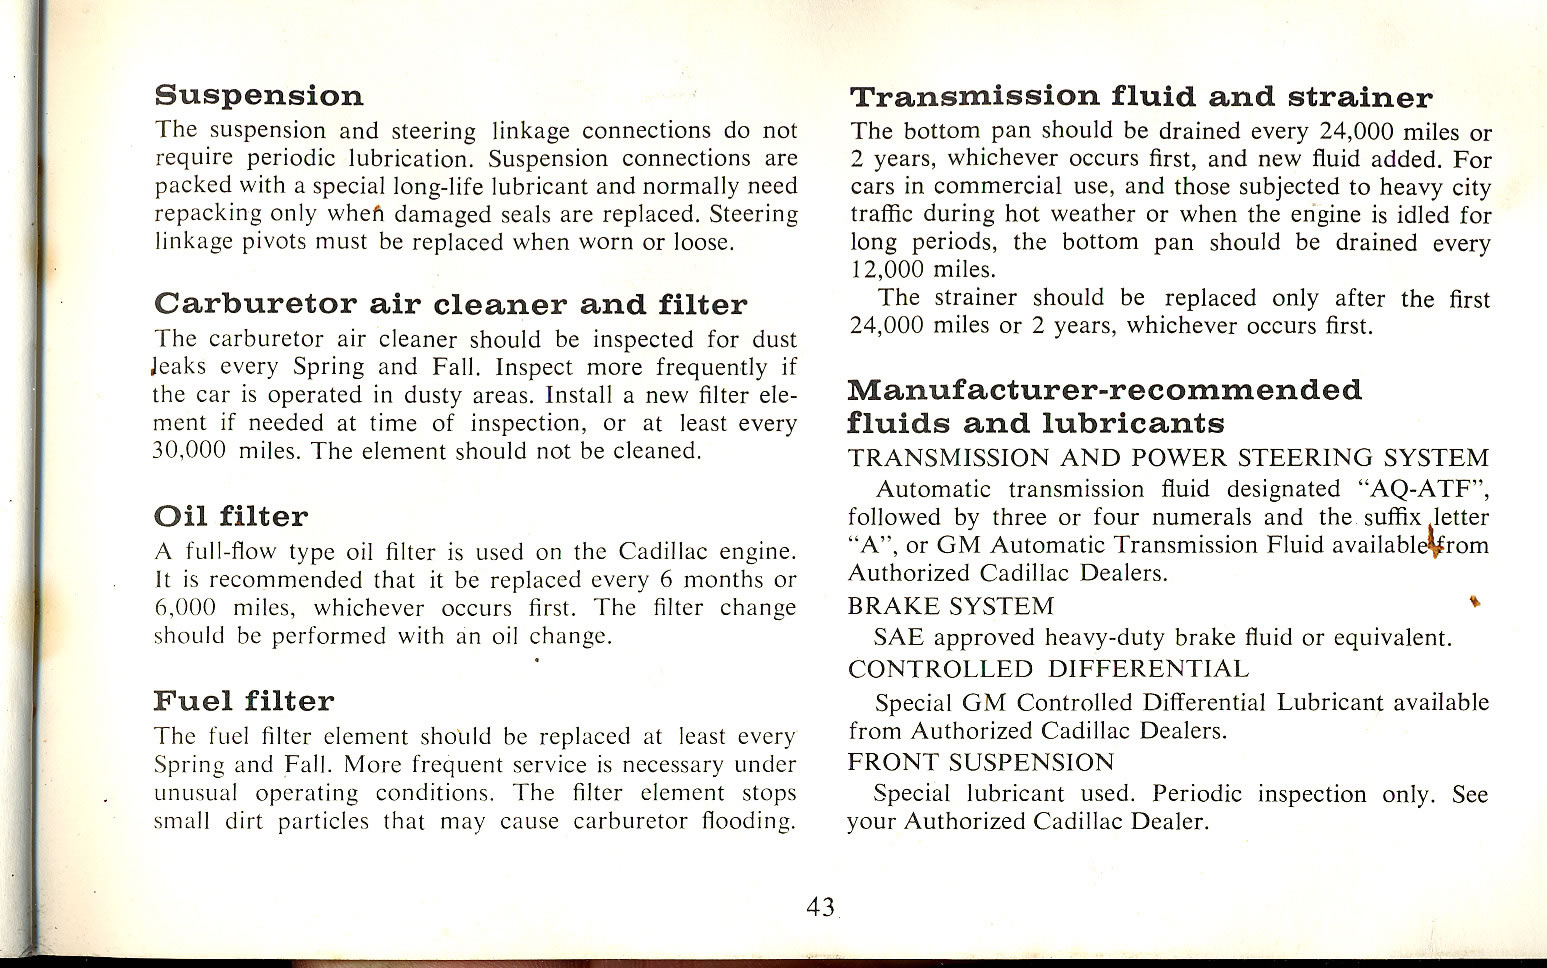 1965_Cadillac_Manual-43